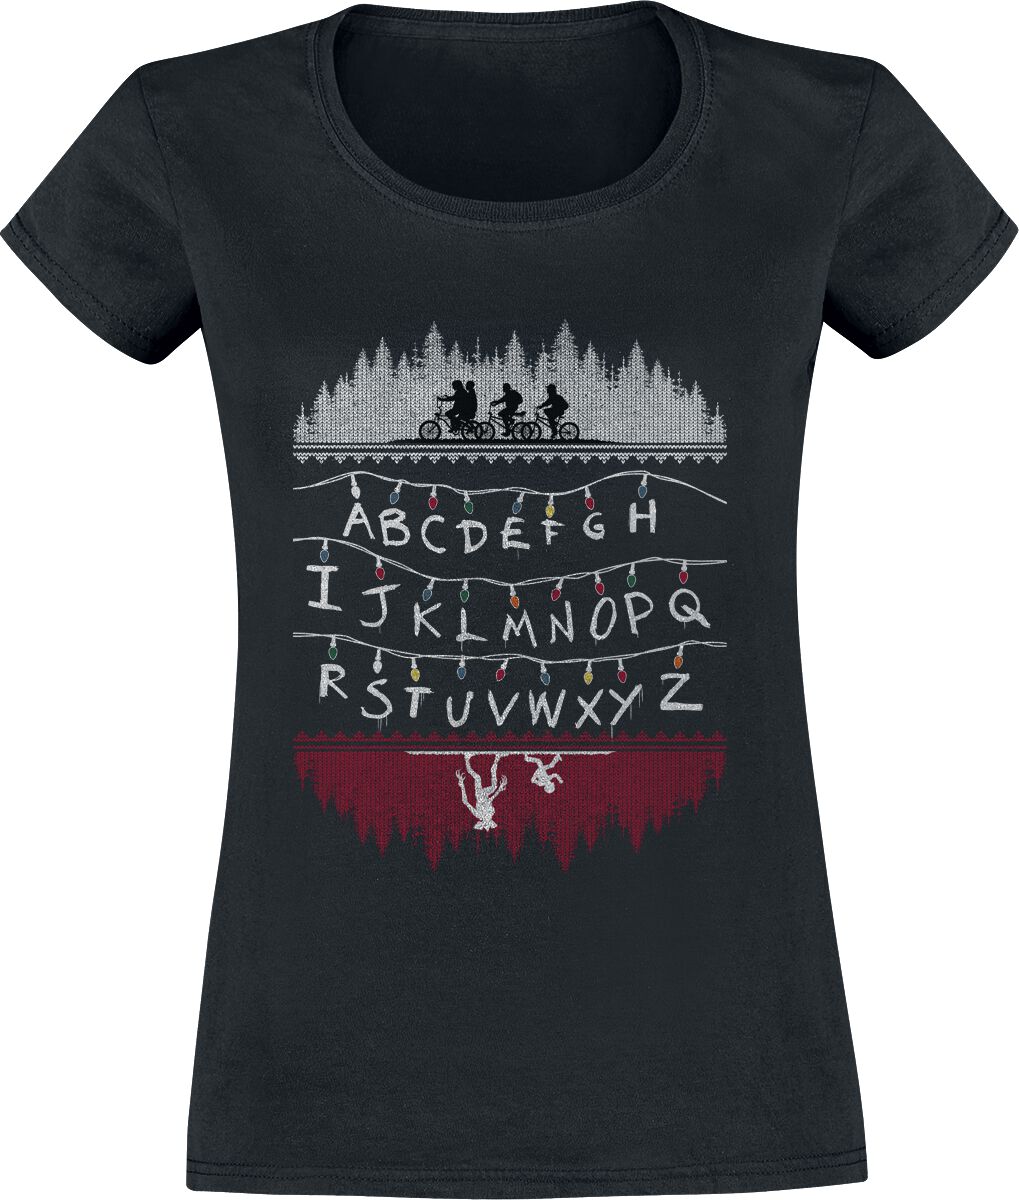 T-Shirt Manches courtes de Stranger Things - Alphabet - S à XXL - pour Femme - noir